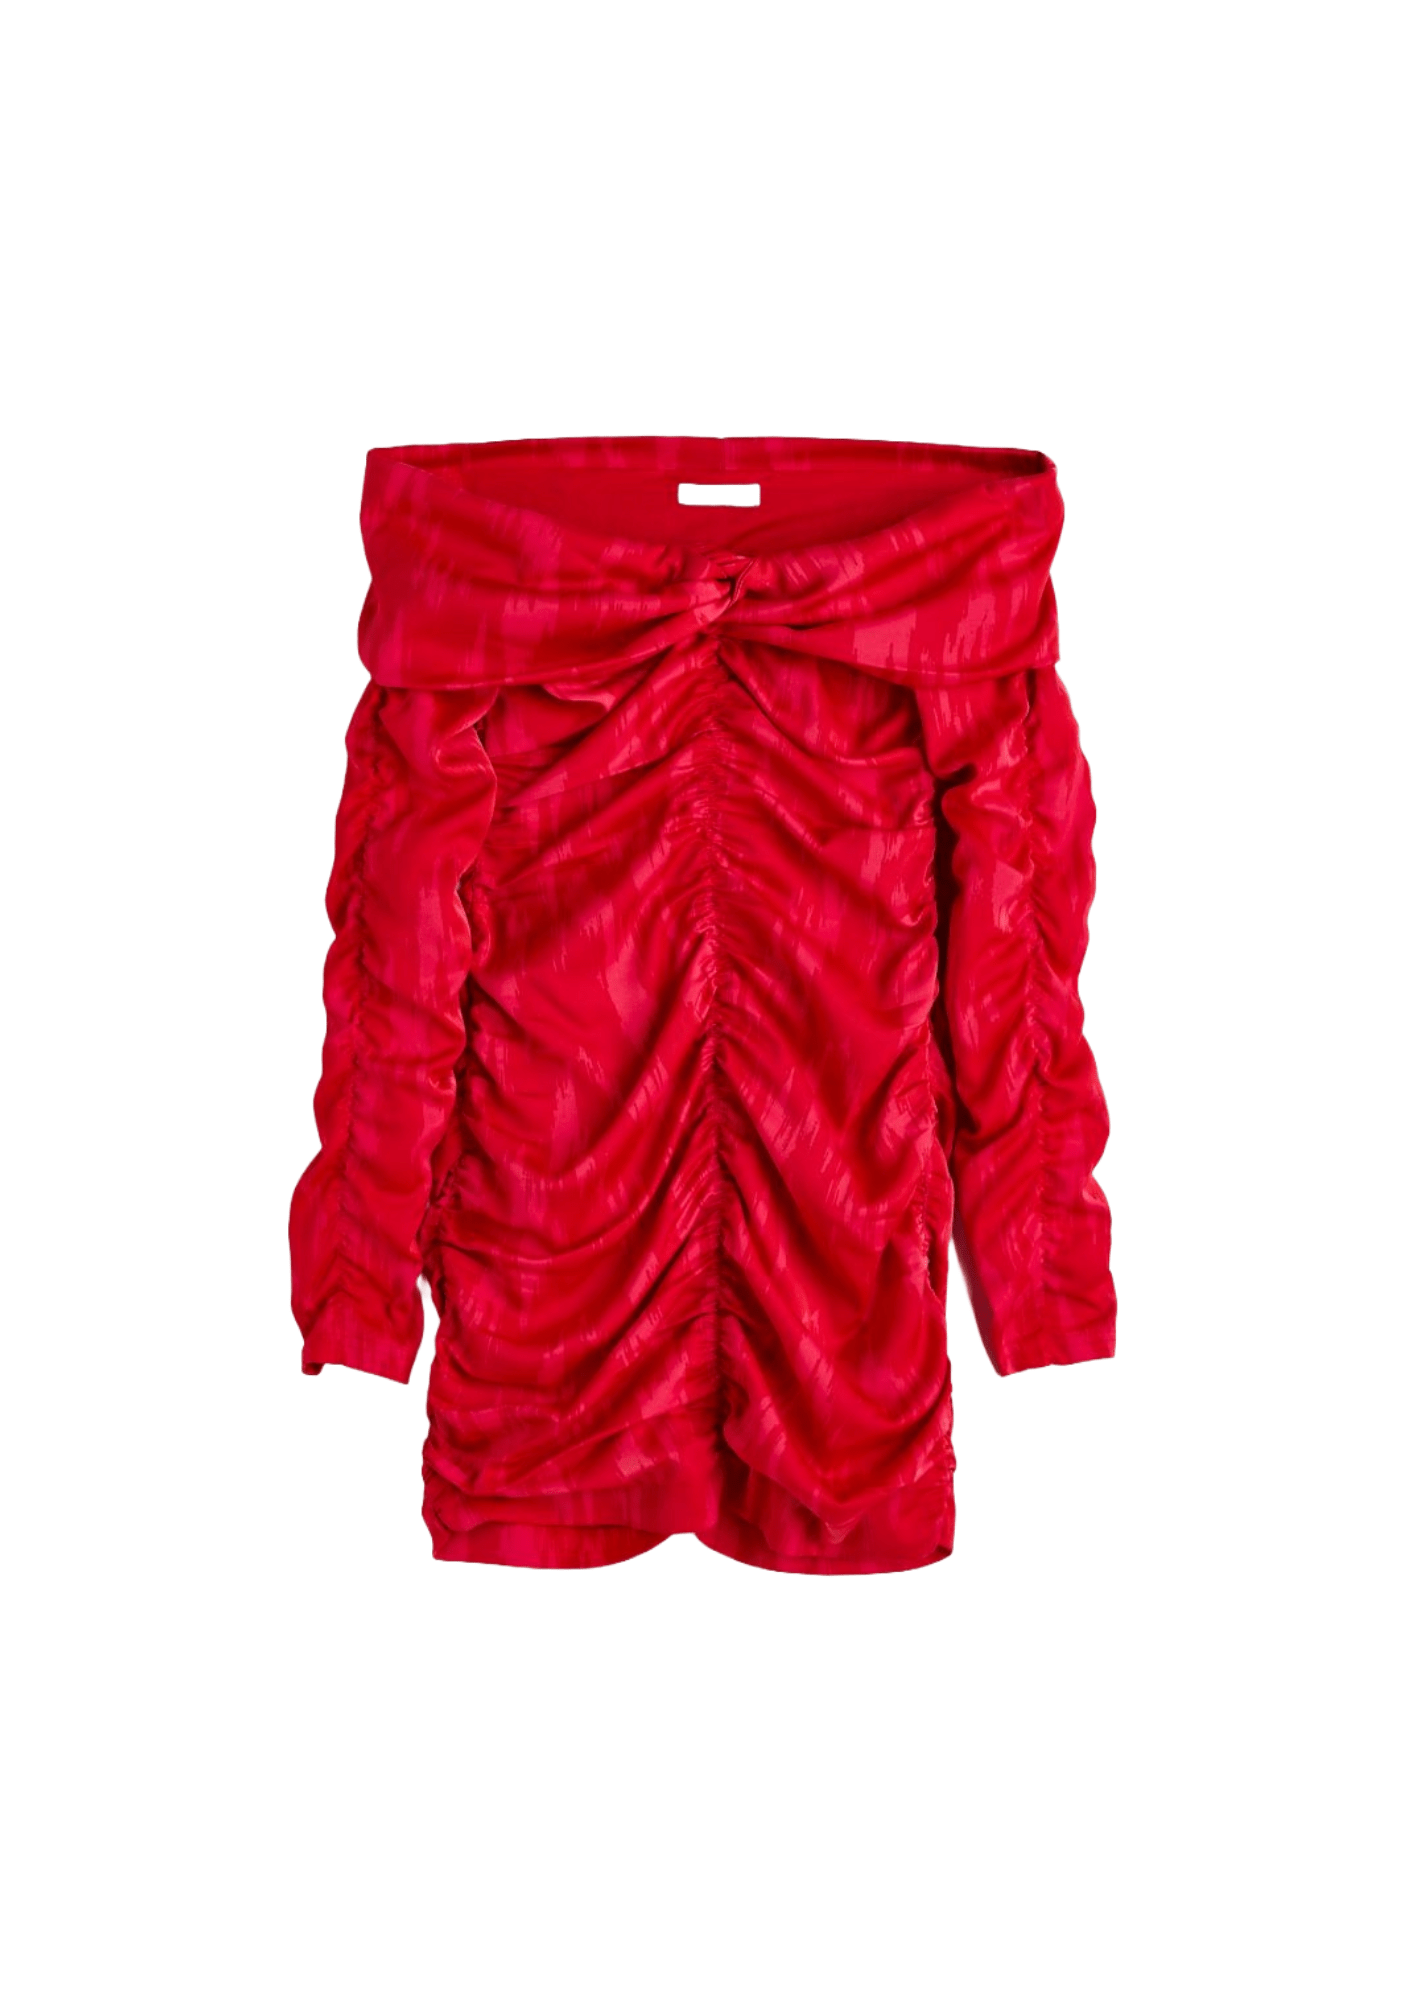 OFF-THE-SHOULDER RED DRESS